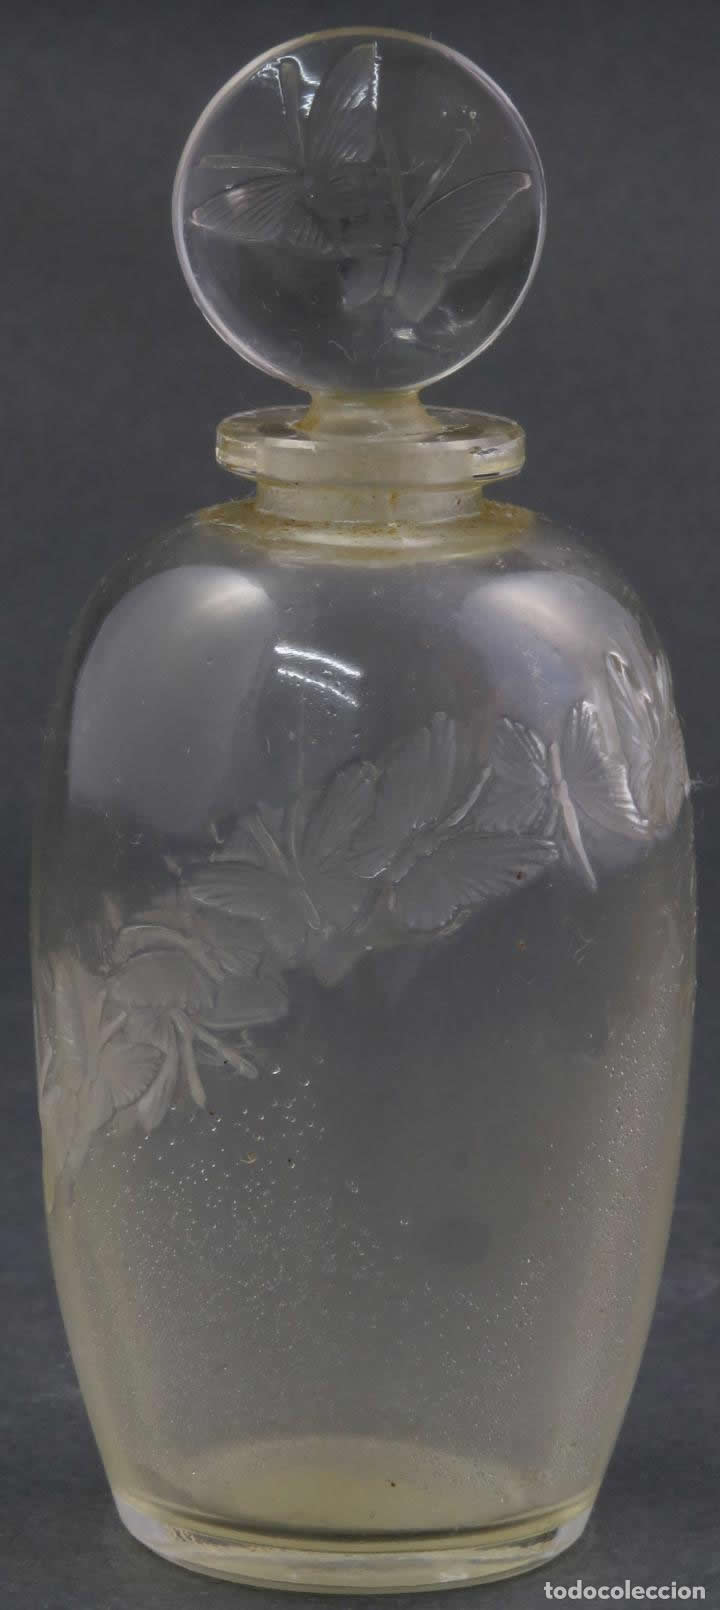 Rene Lalique L'Anneau Merveilleux-2 Perfume Bottle